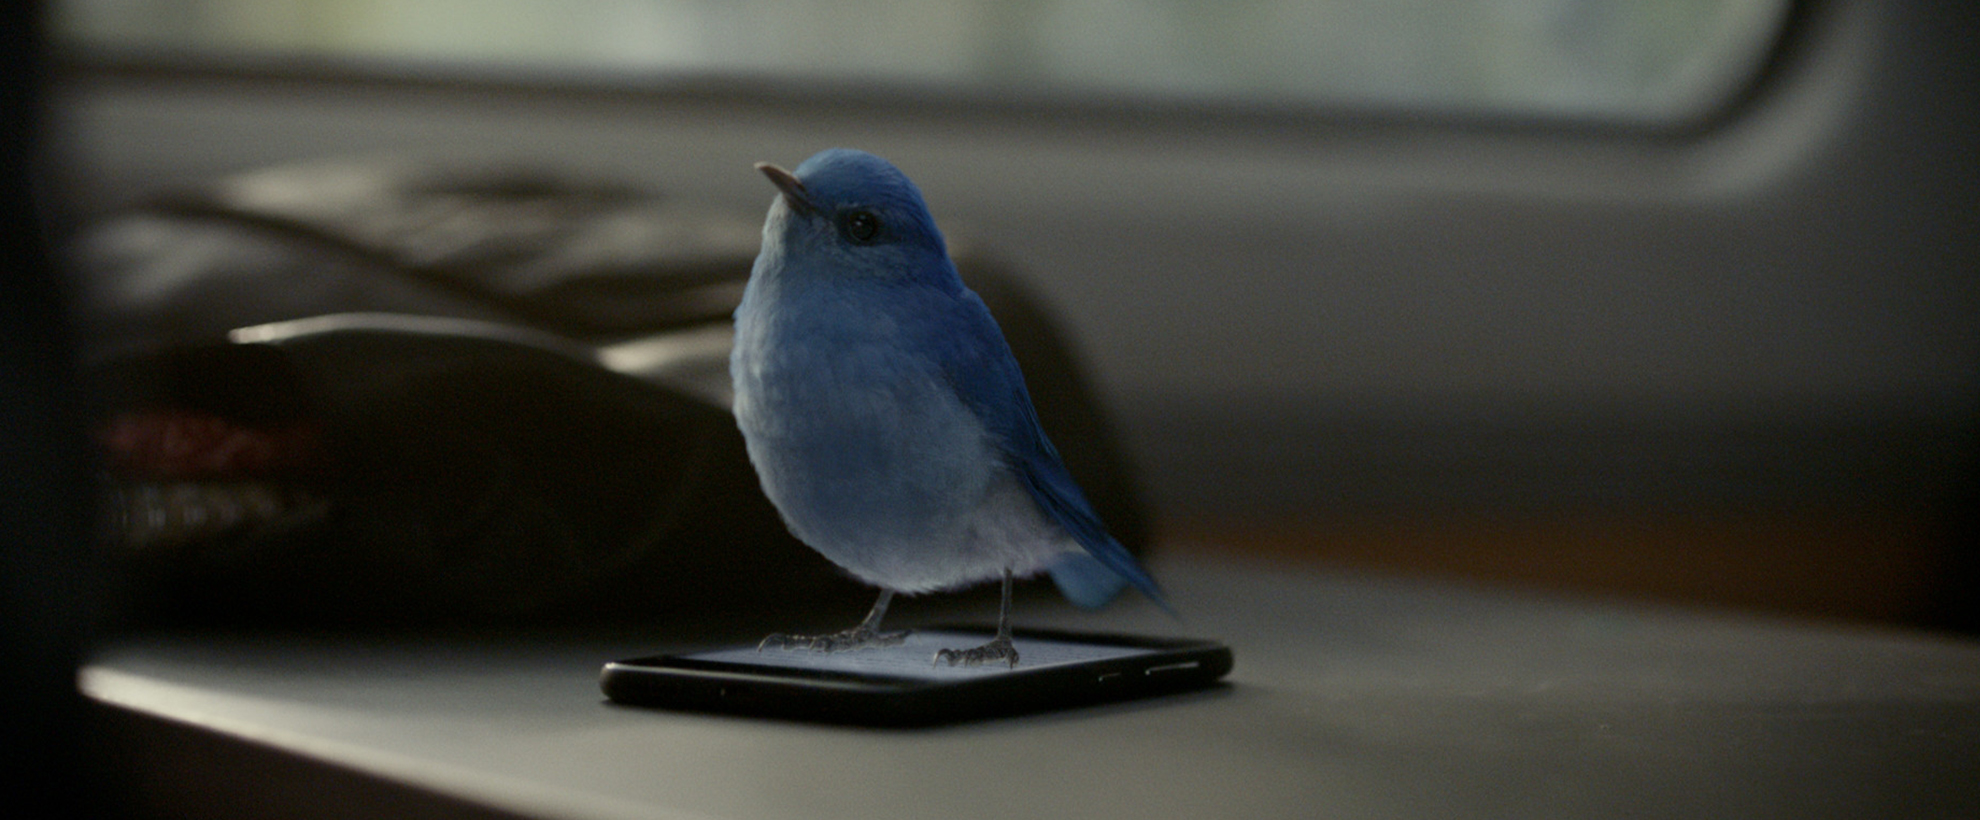 A blue bird stands on a smartphone